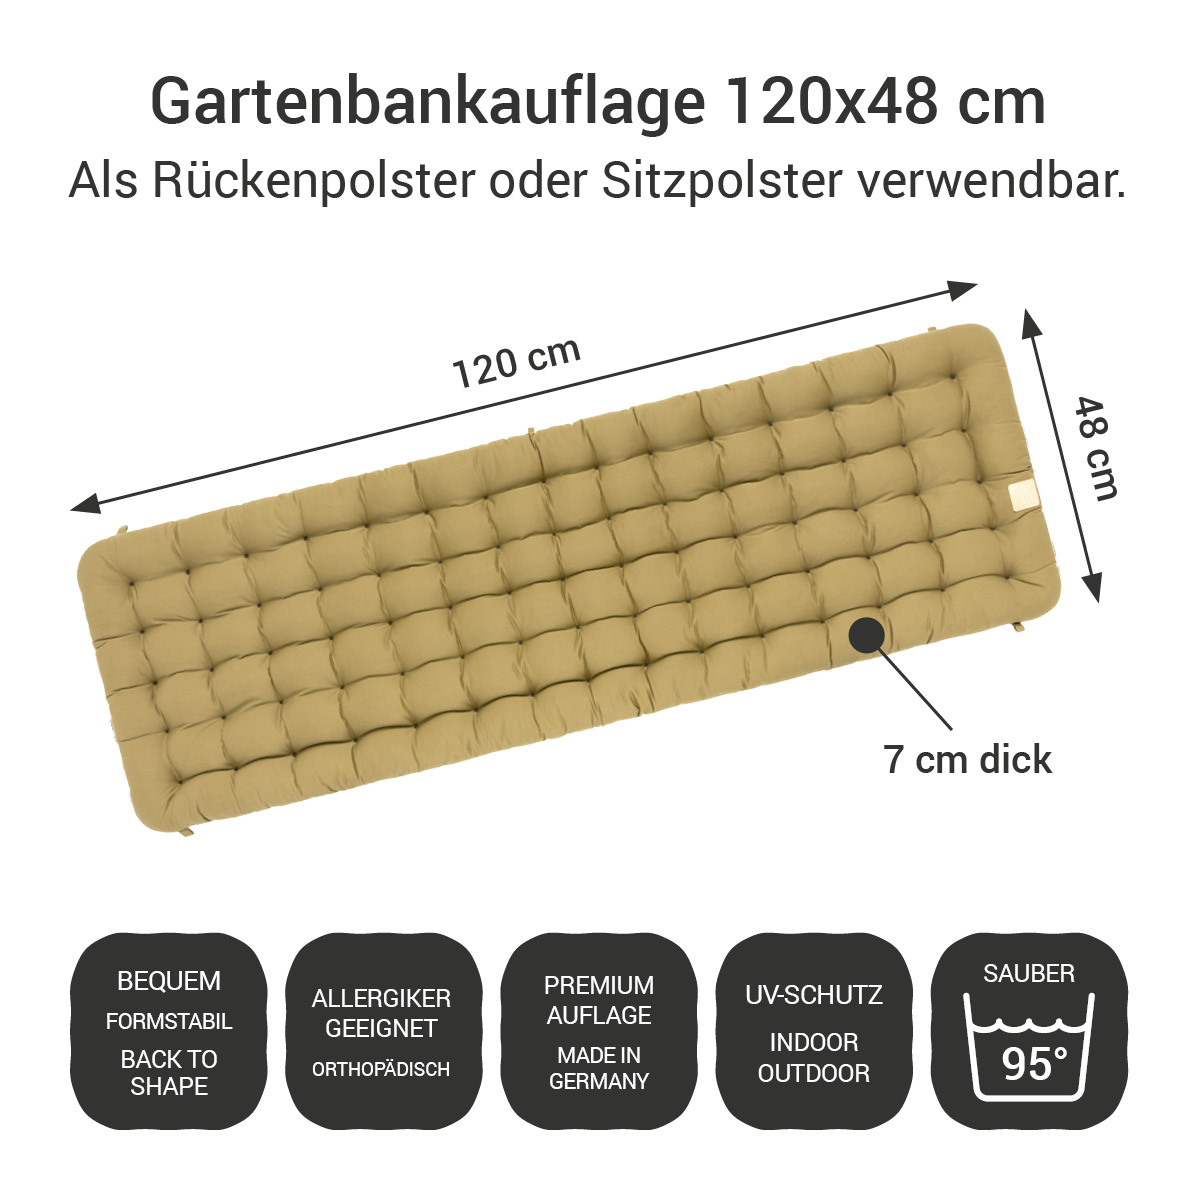 Gartenbank Auflage beige 120x48 cm / 120 x 50 cm | bequem & orthopädisch, komplett im Ganzen waschbar bis 95°C, wetterfest, Made in Germany